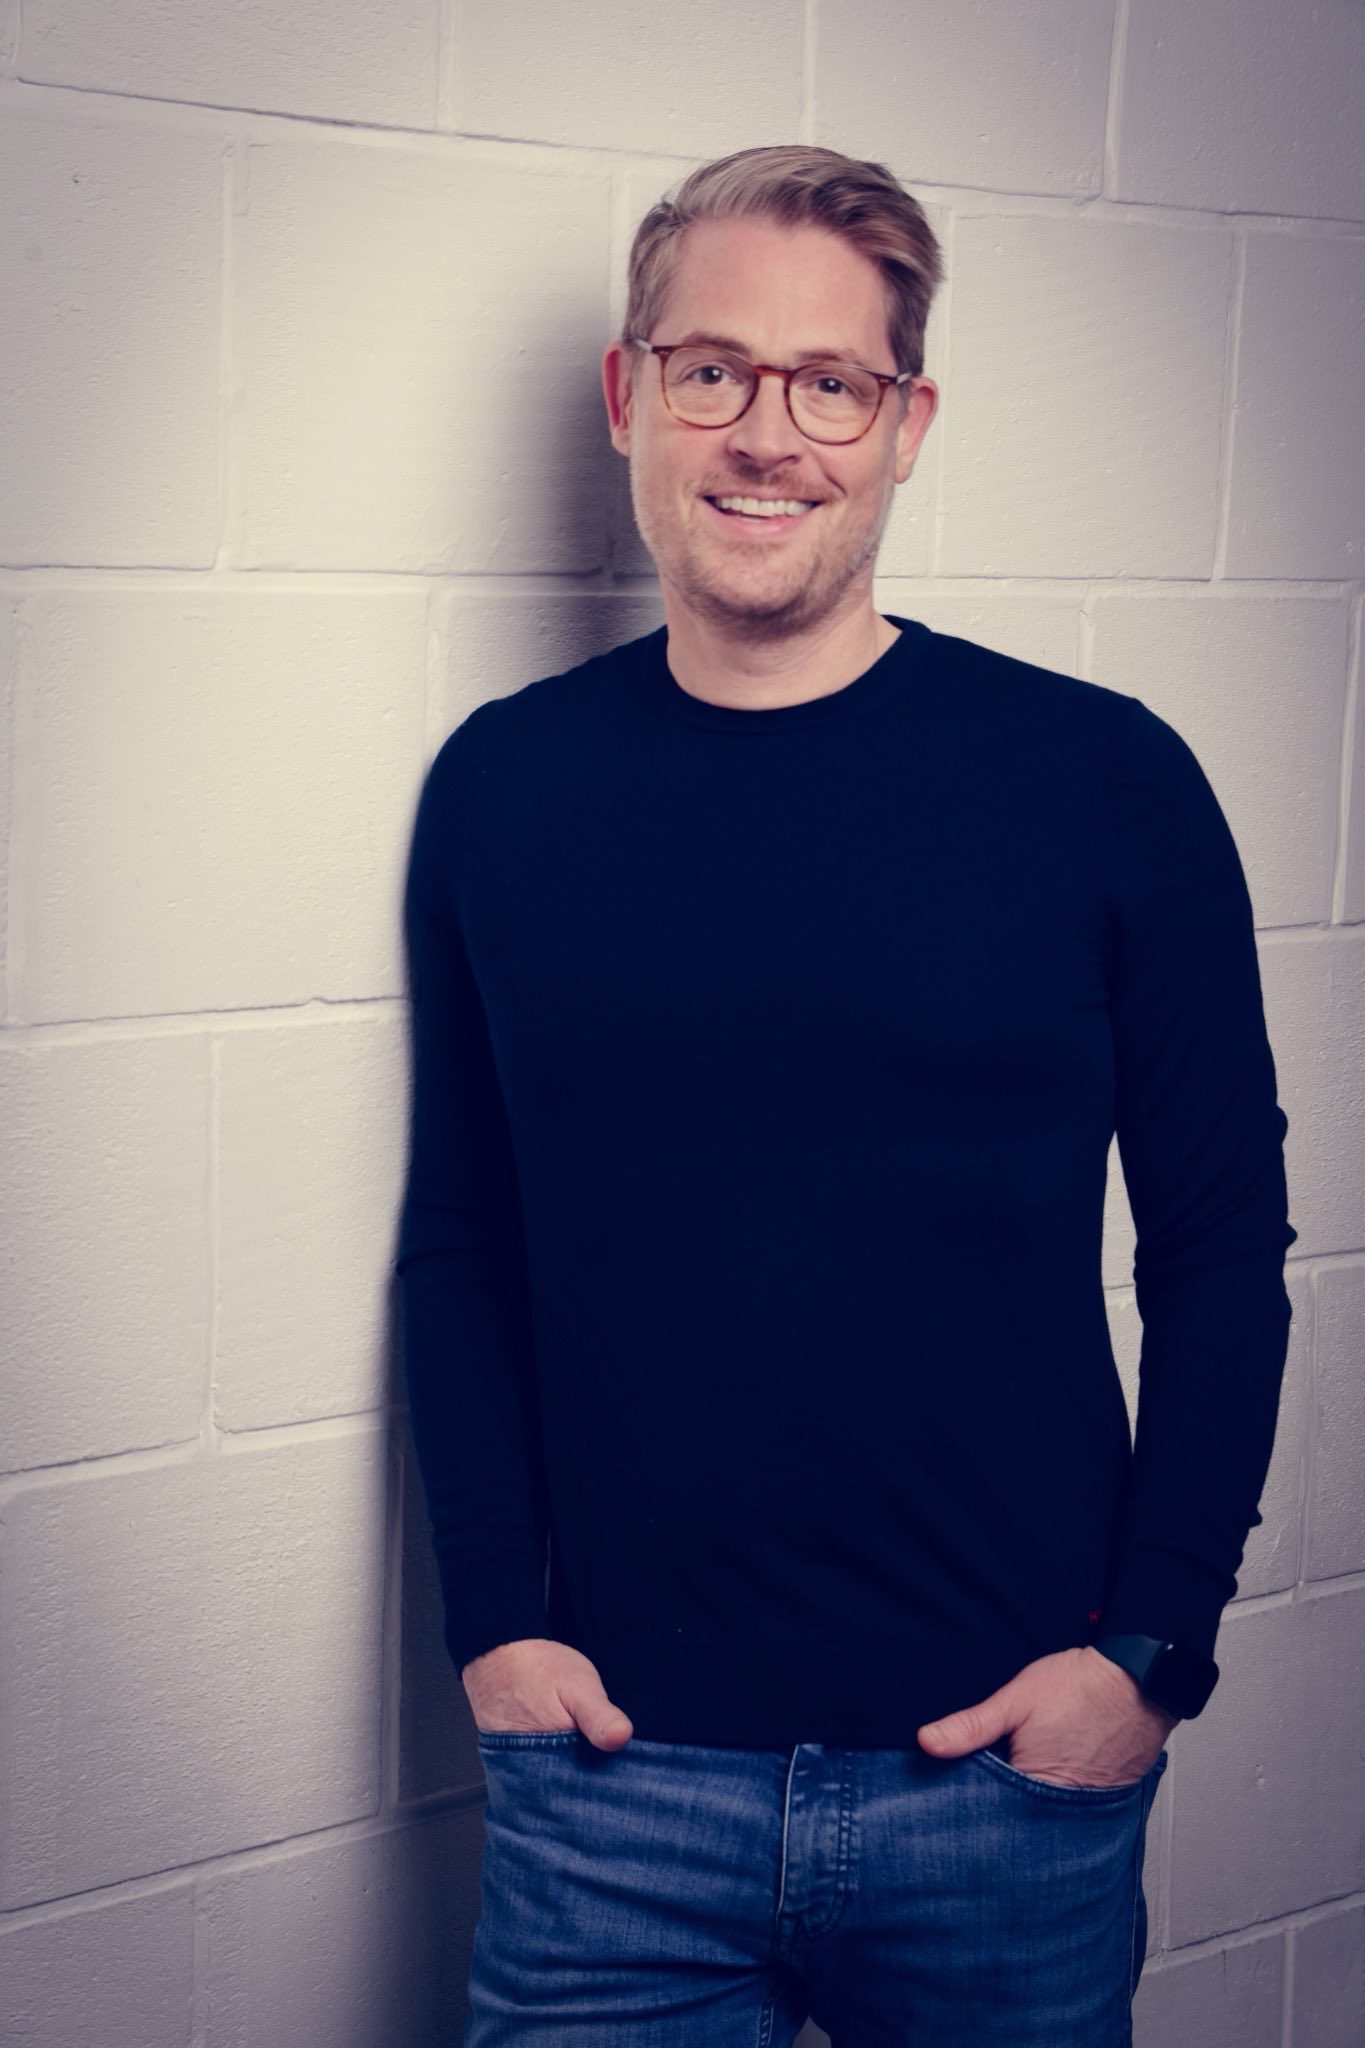 Profilbild von Daniel Zenz, Mitbegründer der novadocs GmbH, Entwicklung App und Software